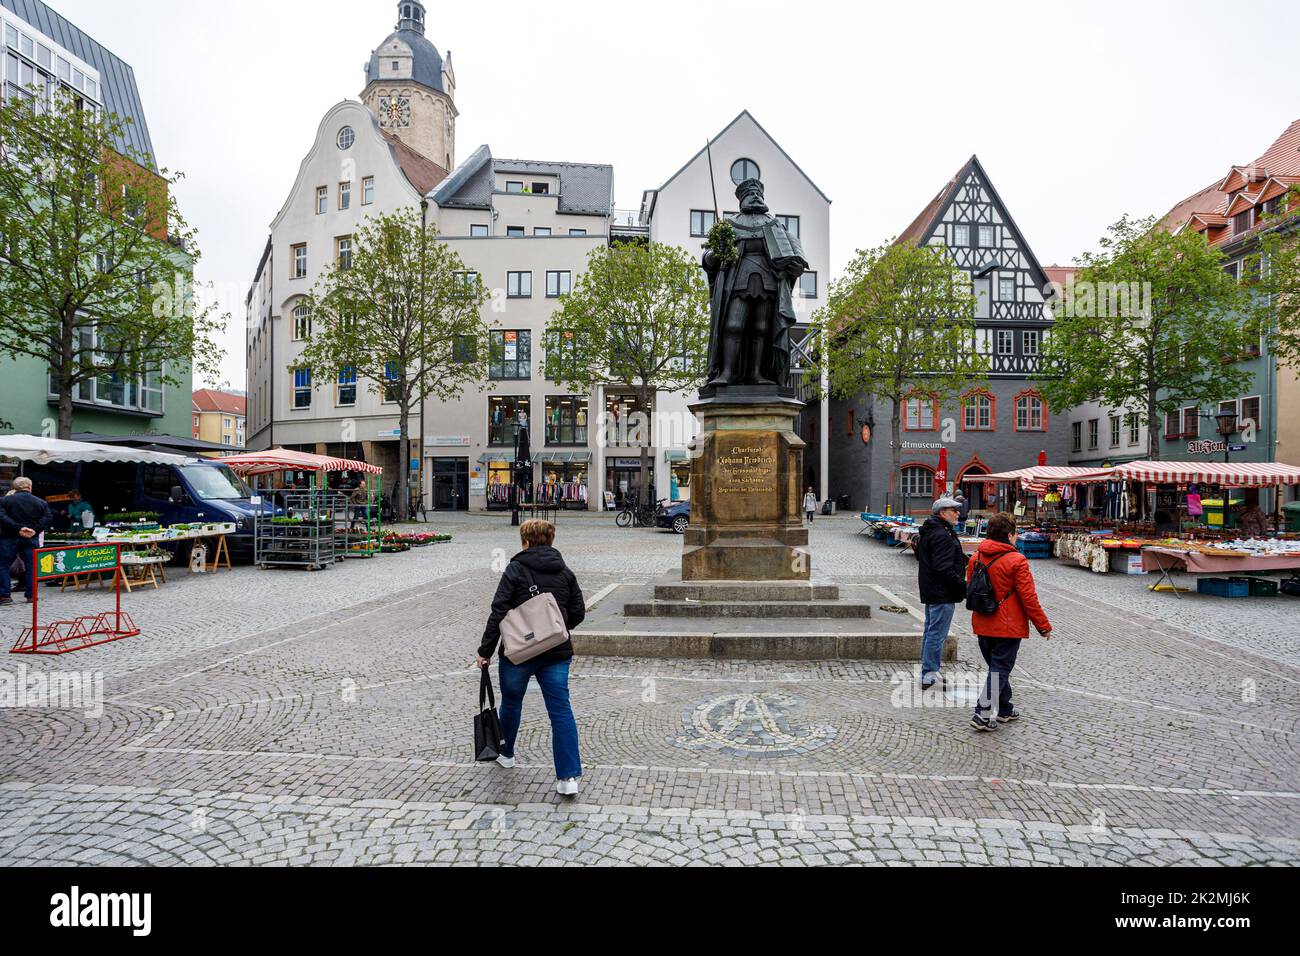 Marktplatz Jena, mit dem Hanfried-Denkmal zum Gedenken an den ehemaligen Herrscher Johann Friedrich I. von Sachsen Stockfoto